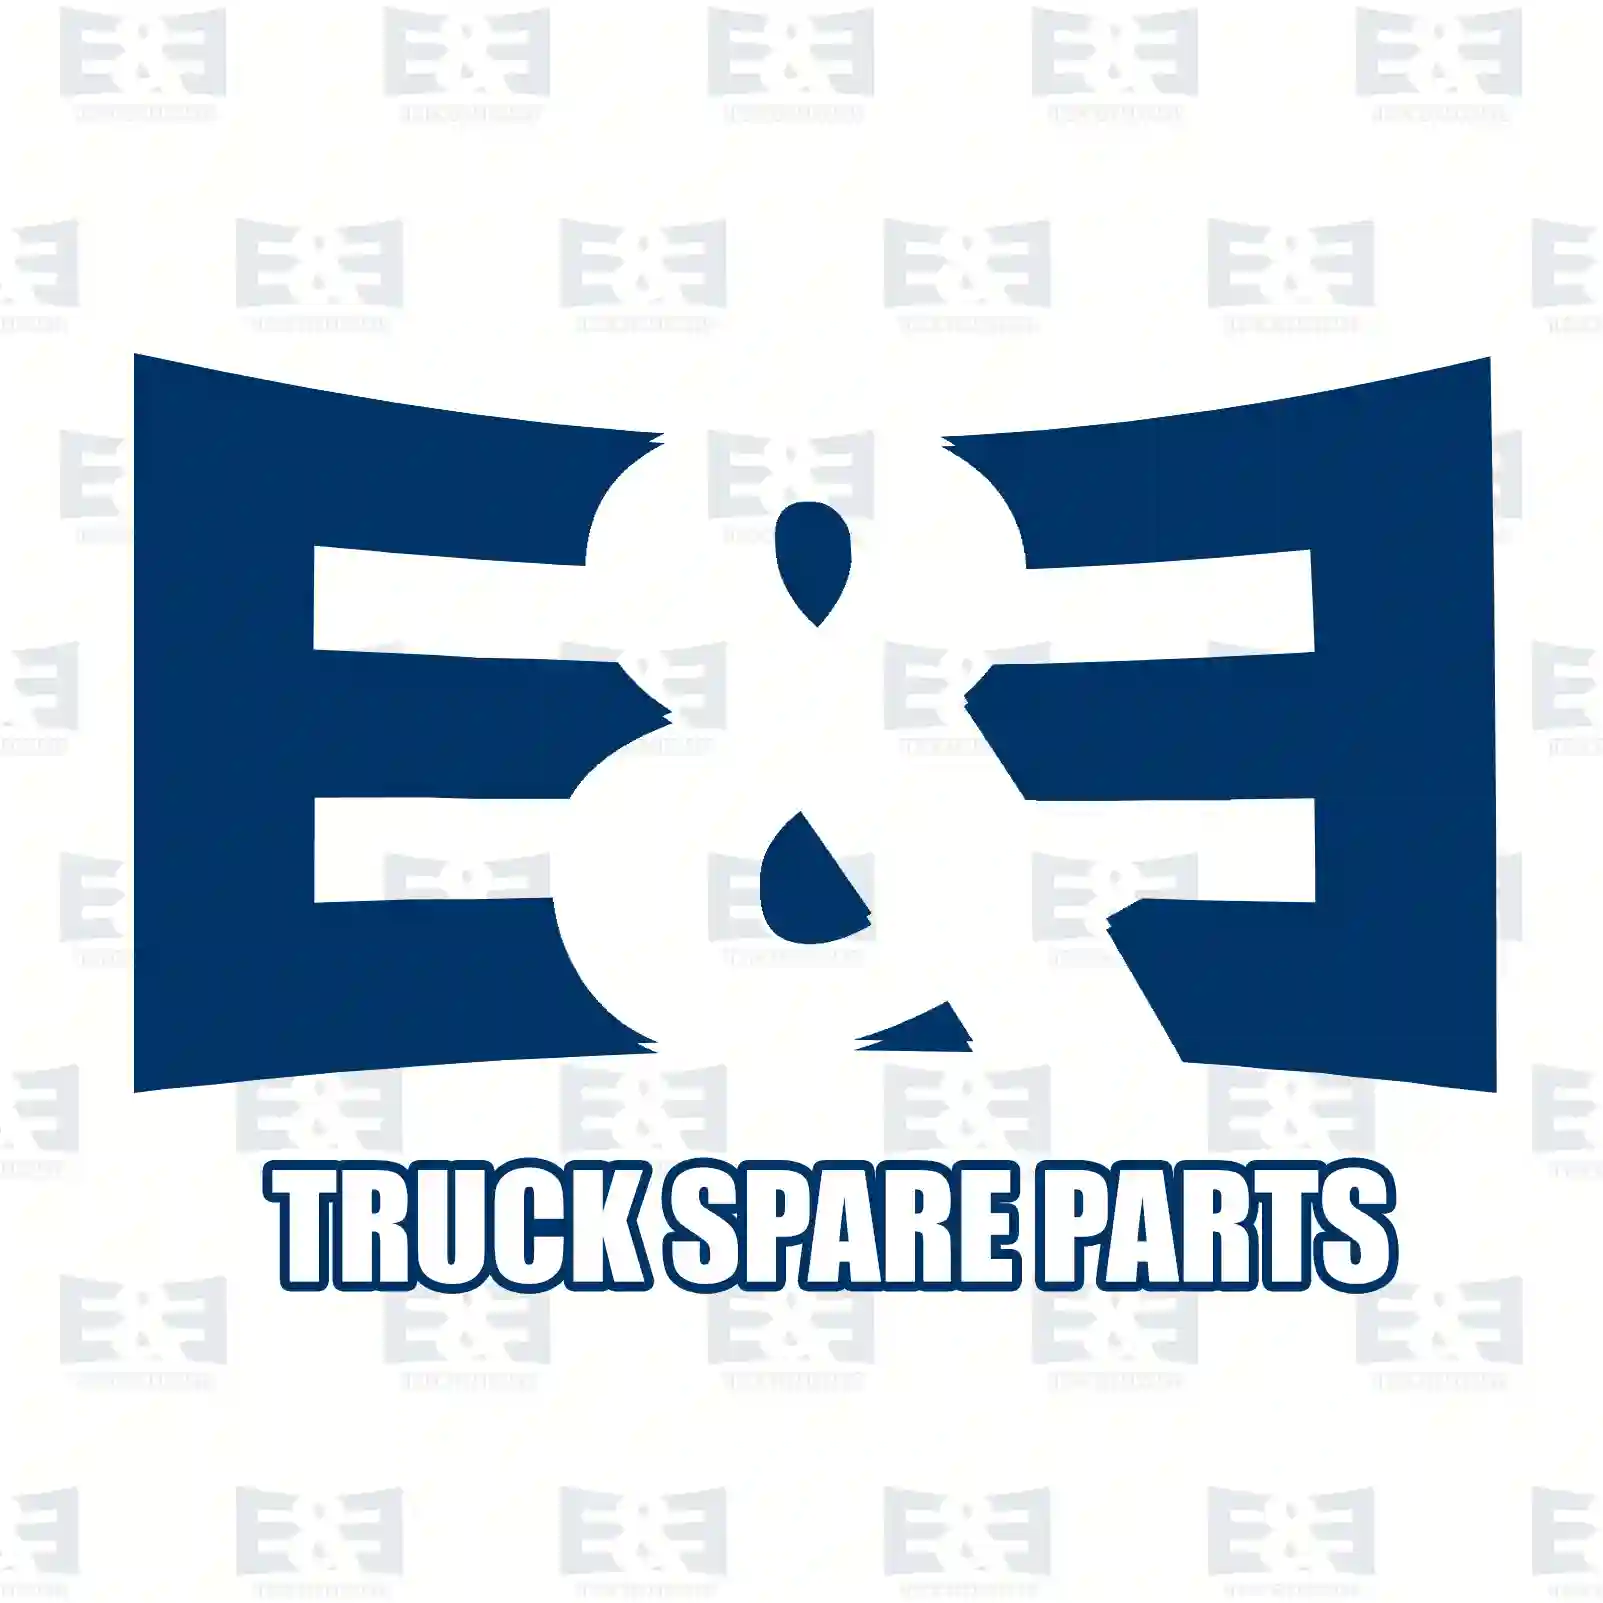 Camshaft bearing kit, 2E2209209, 4570500051, 4570510310S1, 4570510310S2, 4570511410S, 4570511510S1, 4570511510S2, 4570511710S, 4570511910S ||  2E2209209 E&E Truck Spare Parts | Truck Spare Parts, Auotomotive Spare Parts Camshaft bearing kit, 2E2209209, 4570500051, 4570510310S1, 4570510310S2, 4570511410S, 4570511510S1, 4570511510S2, 4570511710S, 4570511910S ||  2E2209209 E&E Truck Spare Parts | Truck Spare Parts, Auotomotive Spare Parts